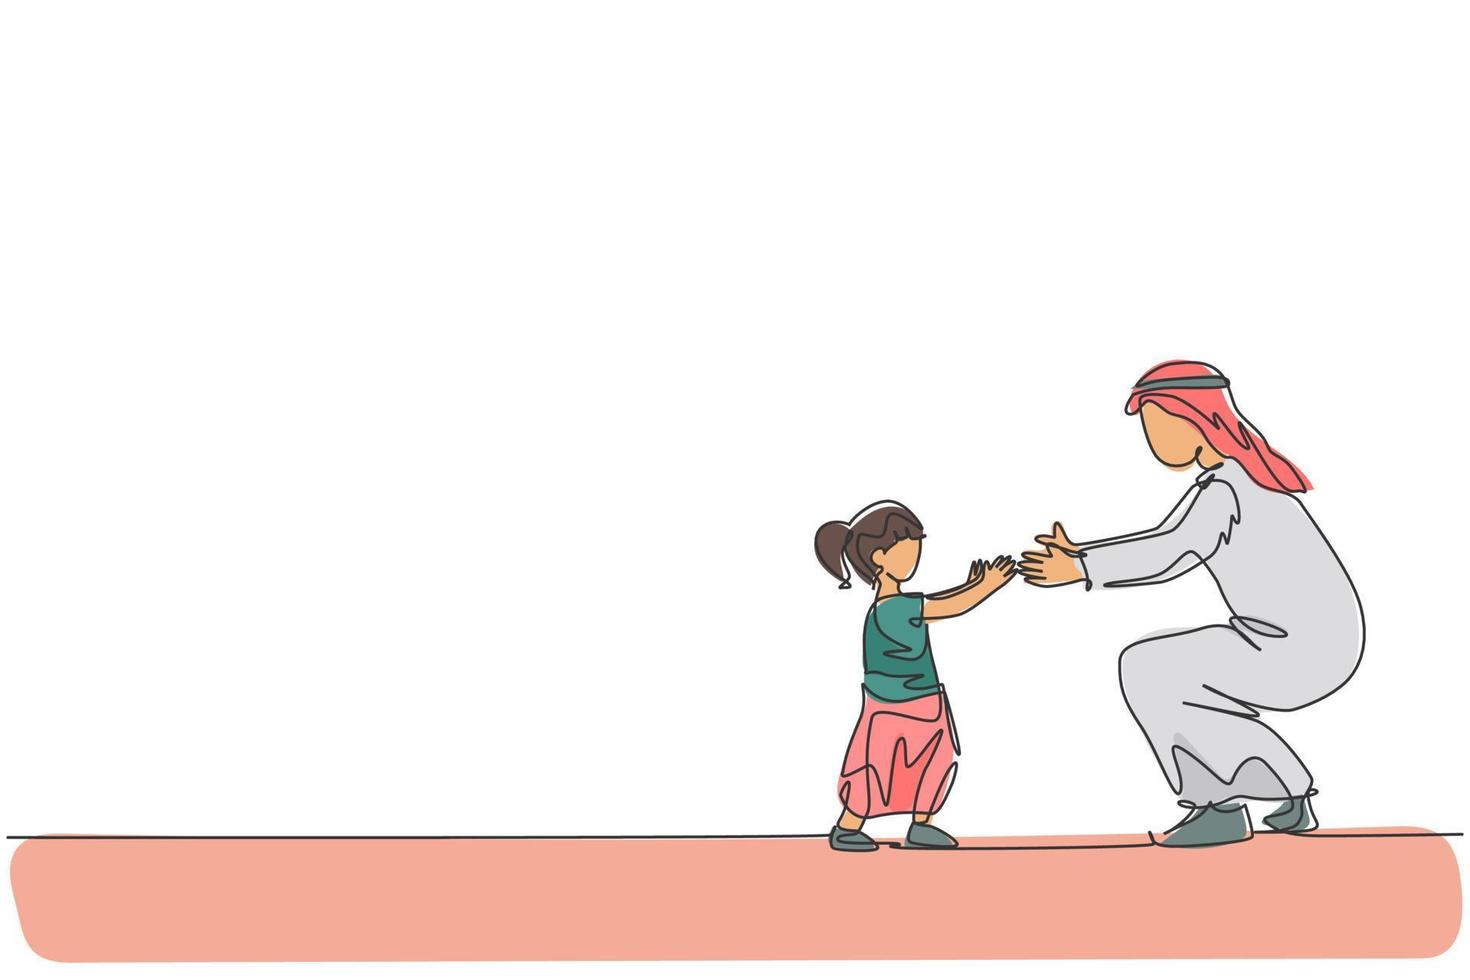 il disegno a linea continua di un giovane papà arabo insegna a camminare verso la figlia piccola a casa. concetto di paternità della famiglia felice musulmano islamico. illustrazione vettoriale di design alla moda con una linea di disegno